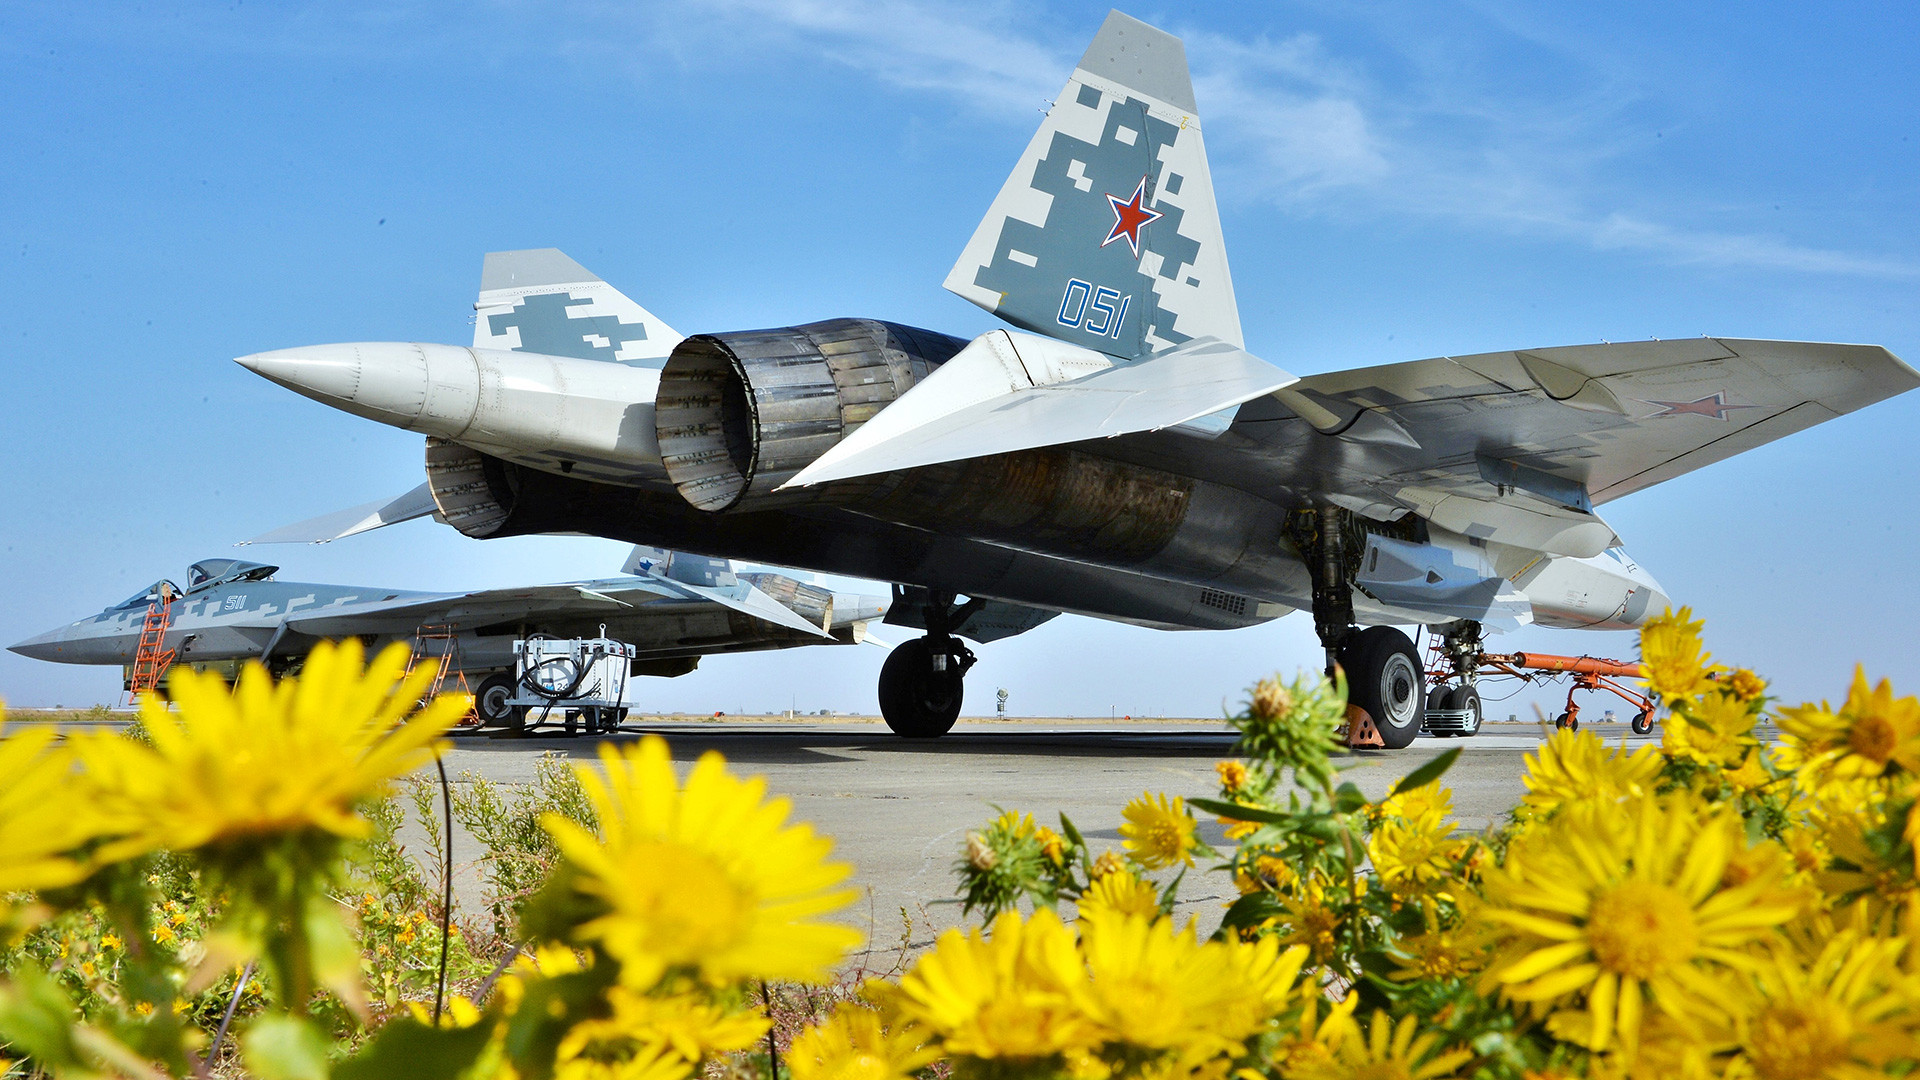 Вишенаменски ловац пете генерације Су-57 у 929-ом Државном центру за тестирање летова Министарства одбране РФ „Чкалов“ у Ахтубинску.